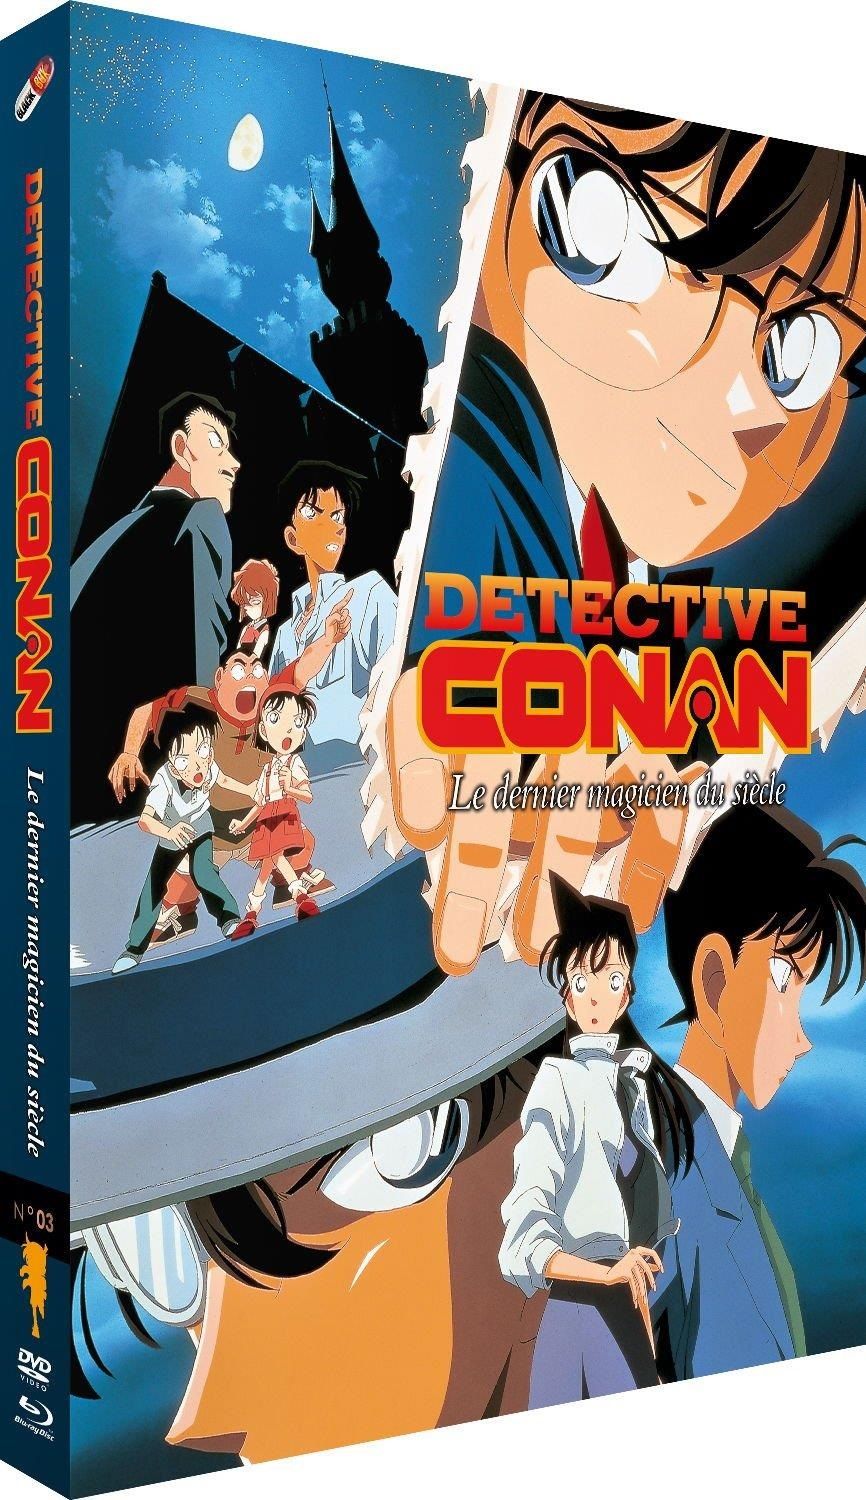 Détective Conan - Film 03 : Le dernier magicien du siècle - Comb